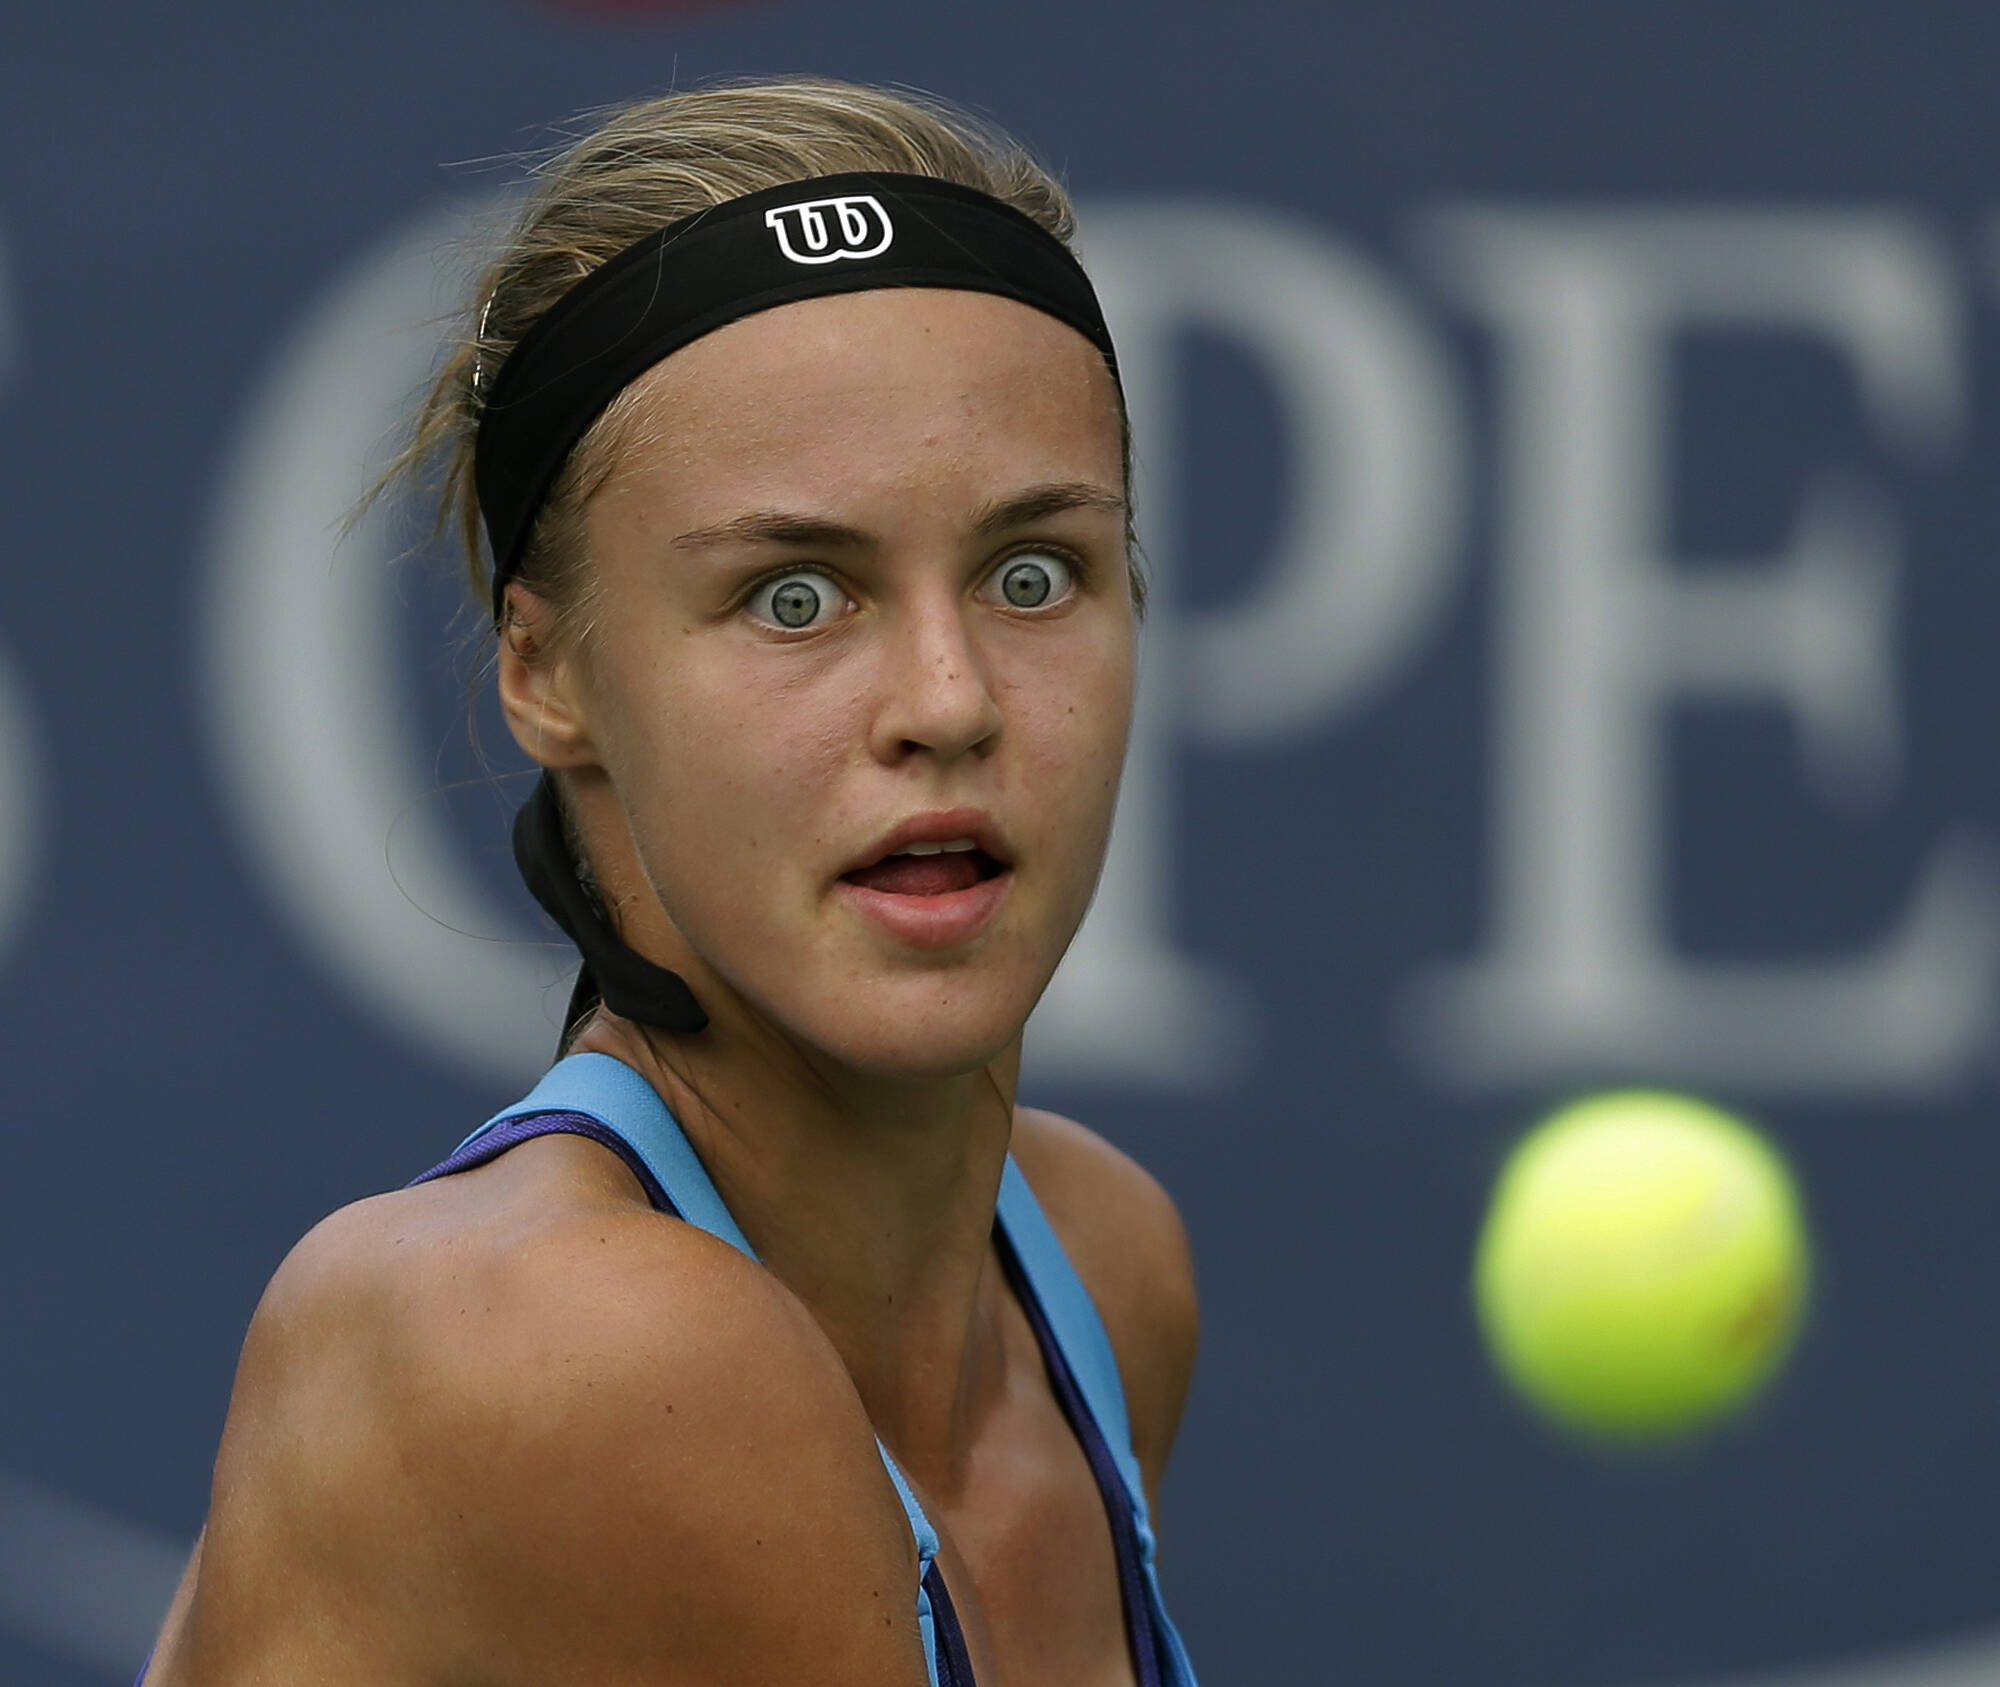 Olhar da eslovaca Anna Schmiedlova na segunda rodada do US Open. Foto: Darron Cummings/AP